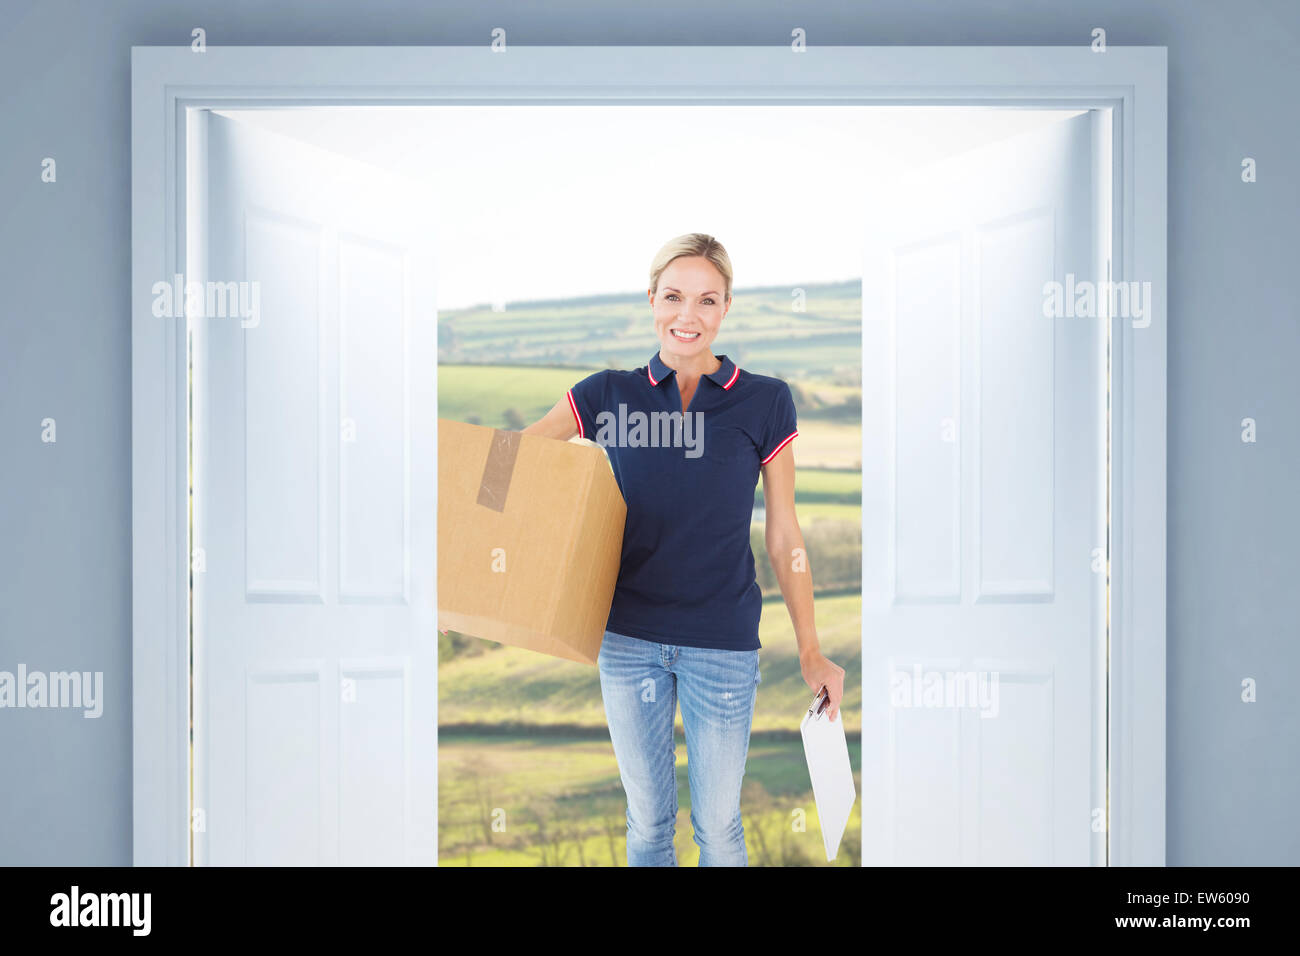 Immagine composita della felice donna consegna tenendo la scatola di cartone e appunti Foto Stock